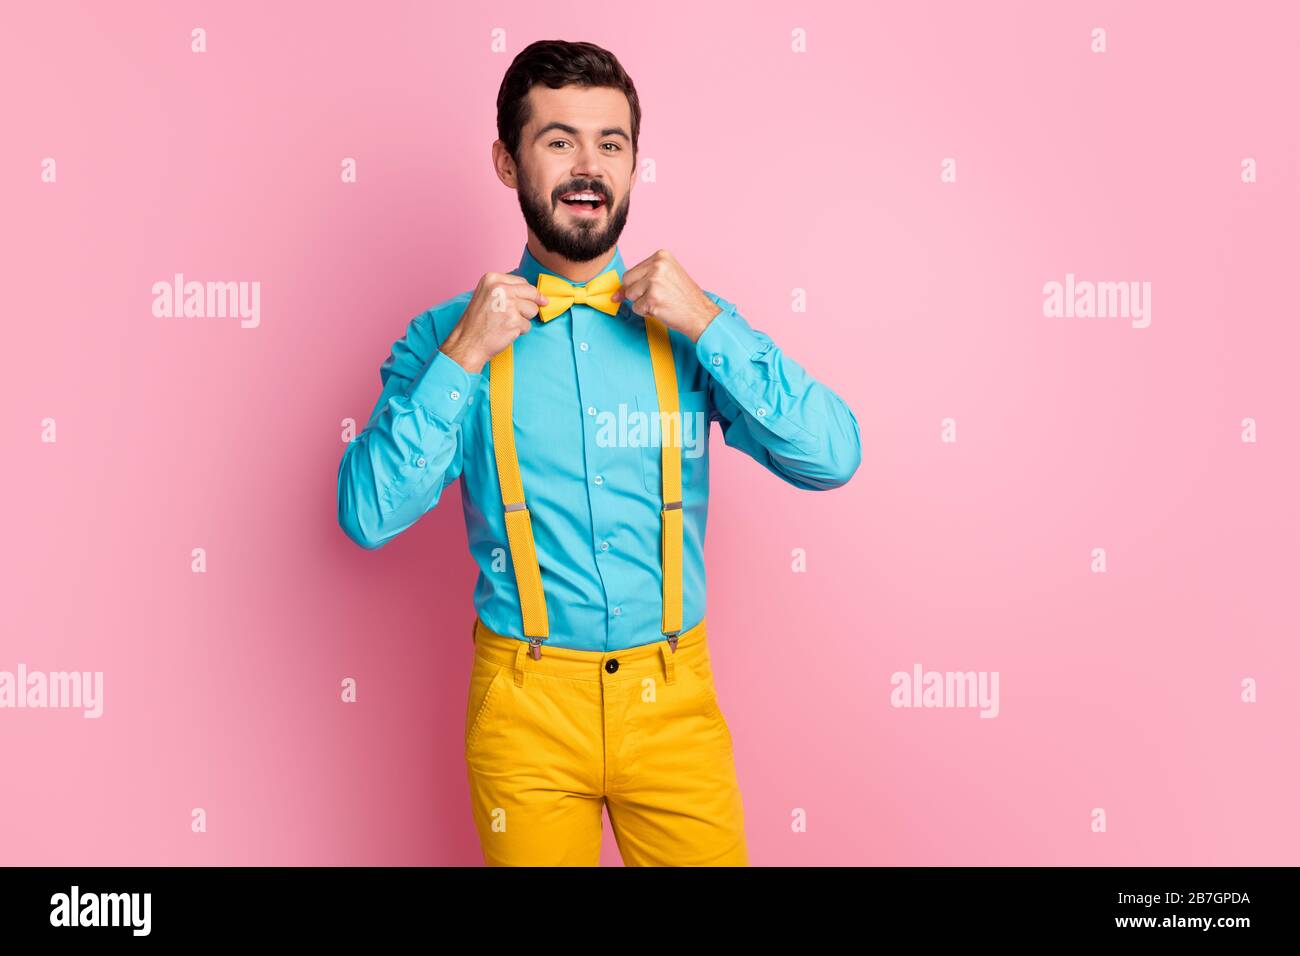 Portrait de son beau gai gai gai gai content imposant bien habit barbu gars  portant la chemise bleu menthe fixant noeud-cravate mariage mc Photo Stock  - Alamy